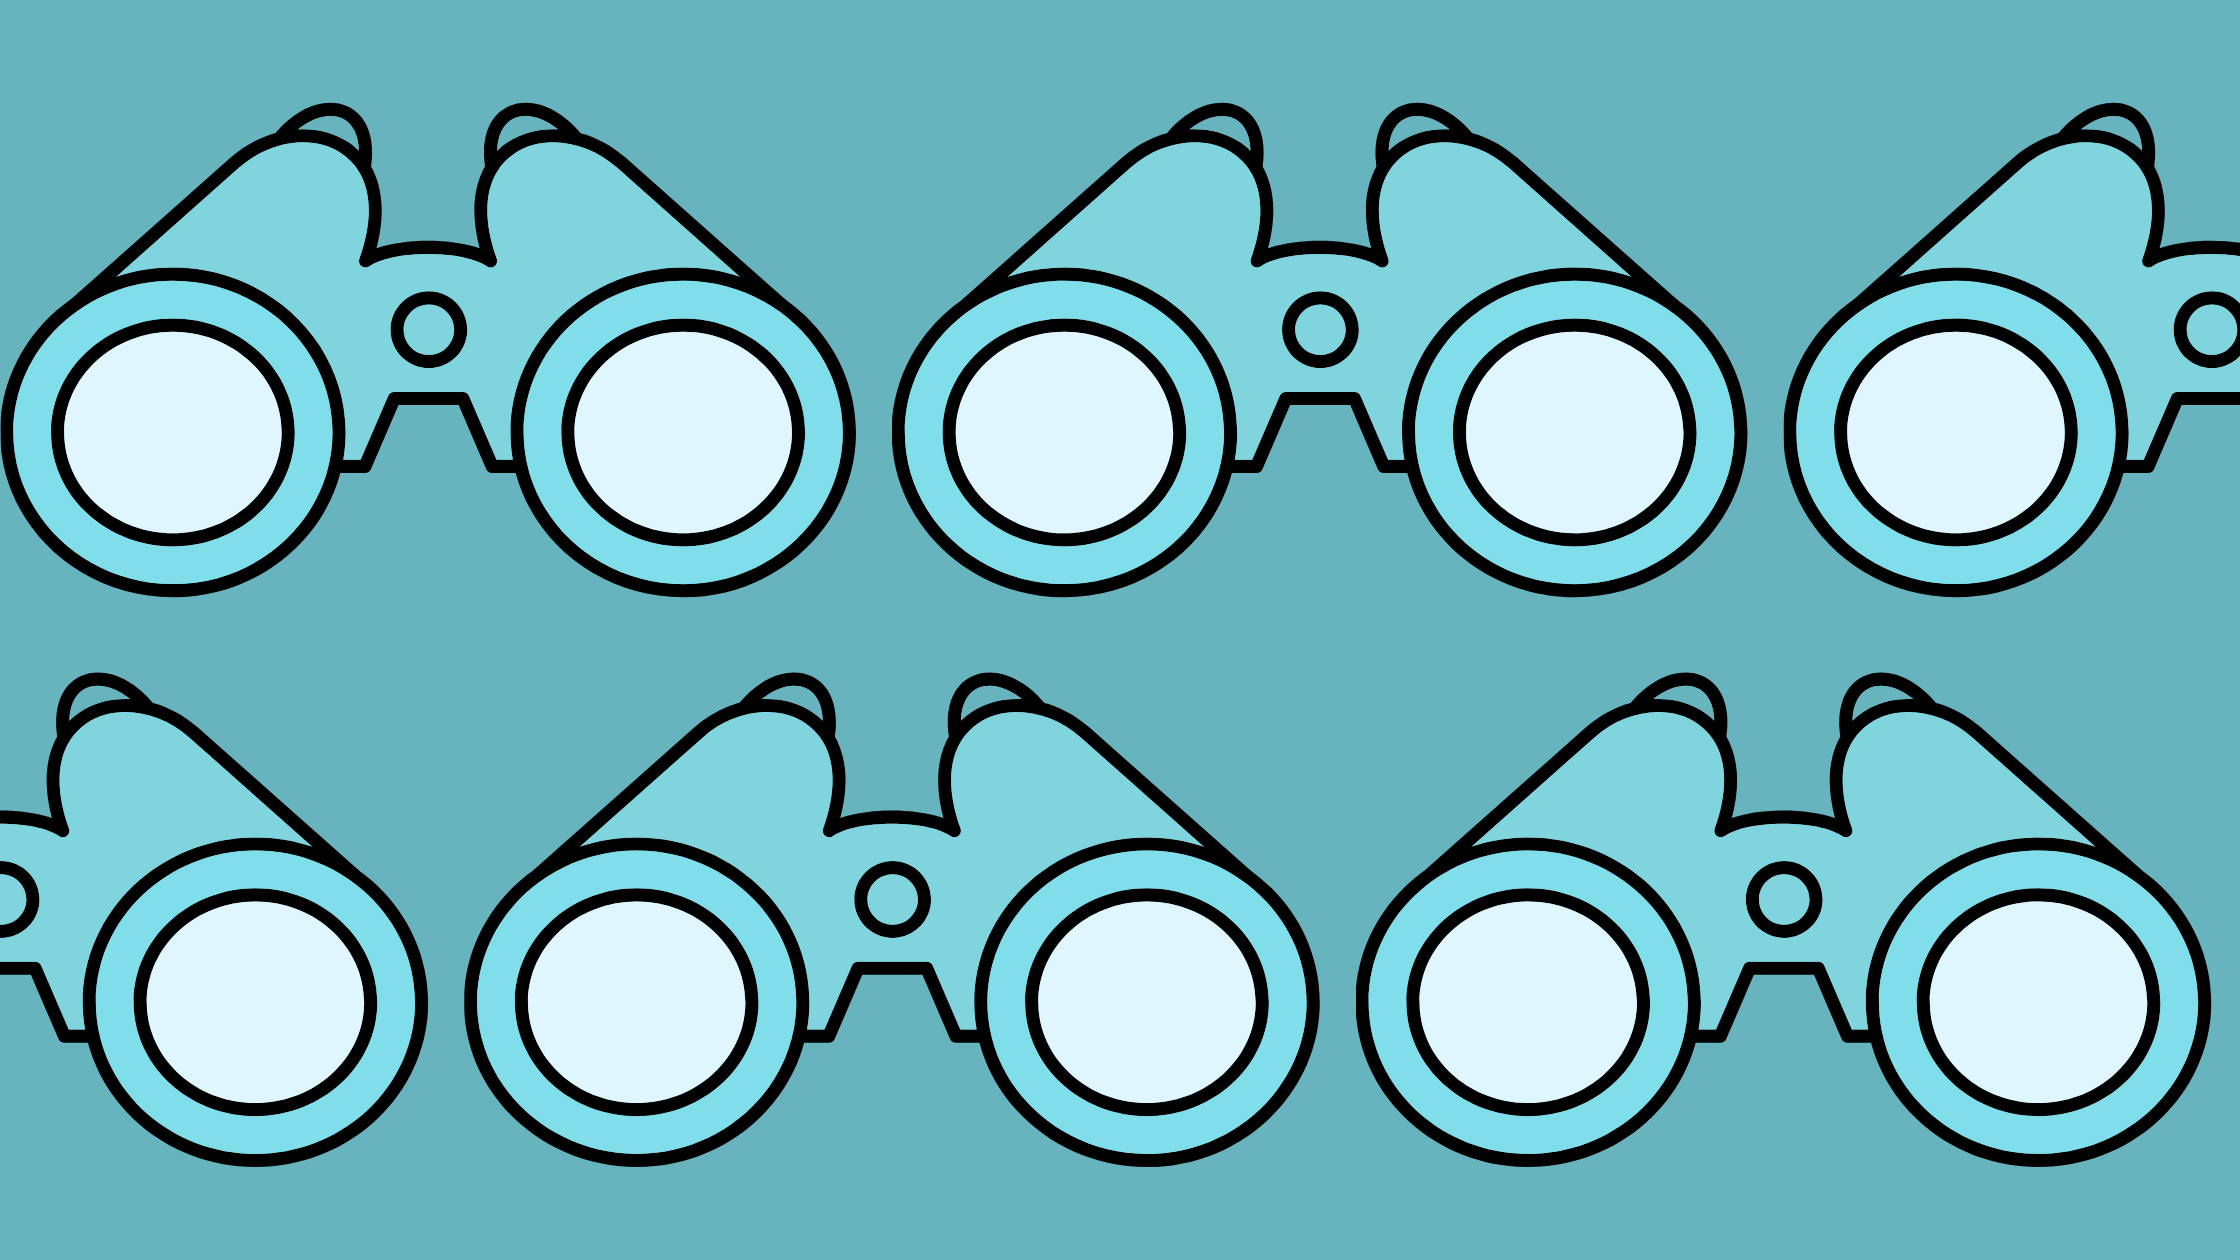 Several pairs of binoculars